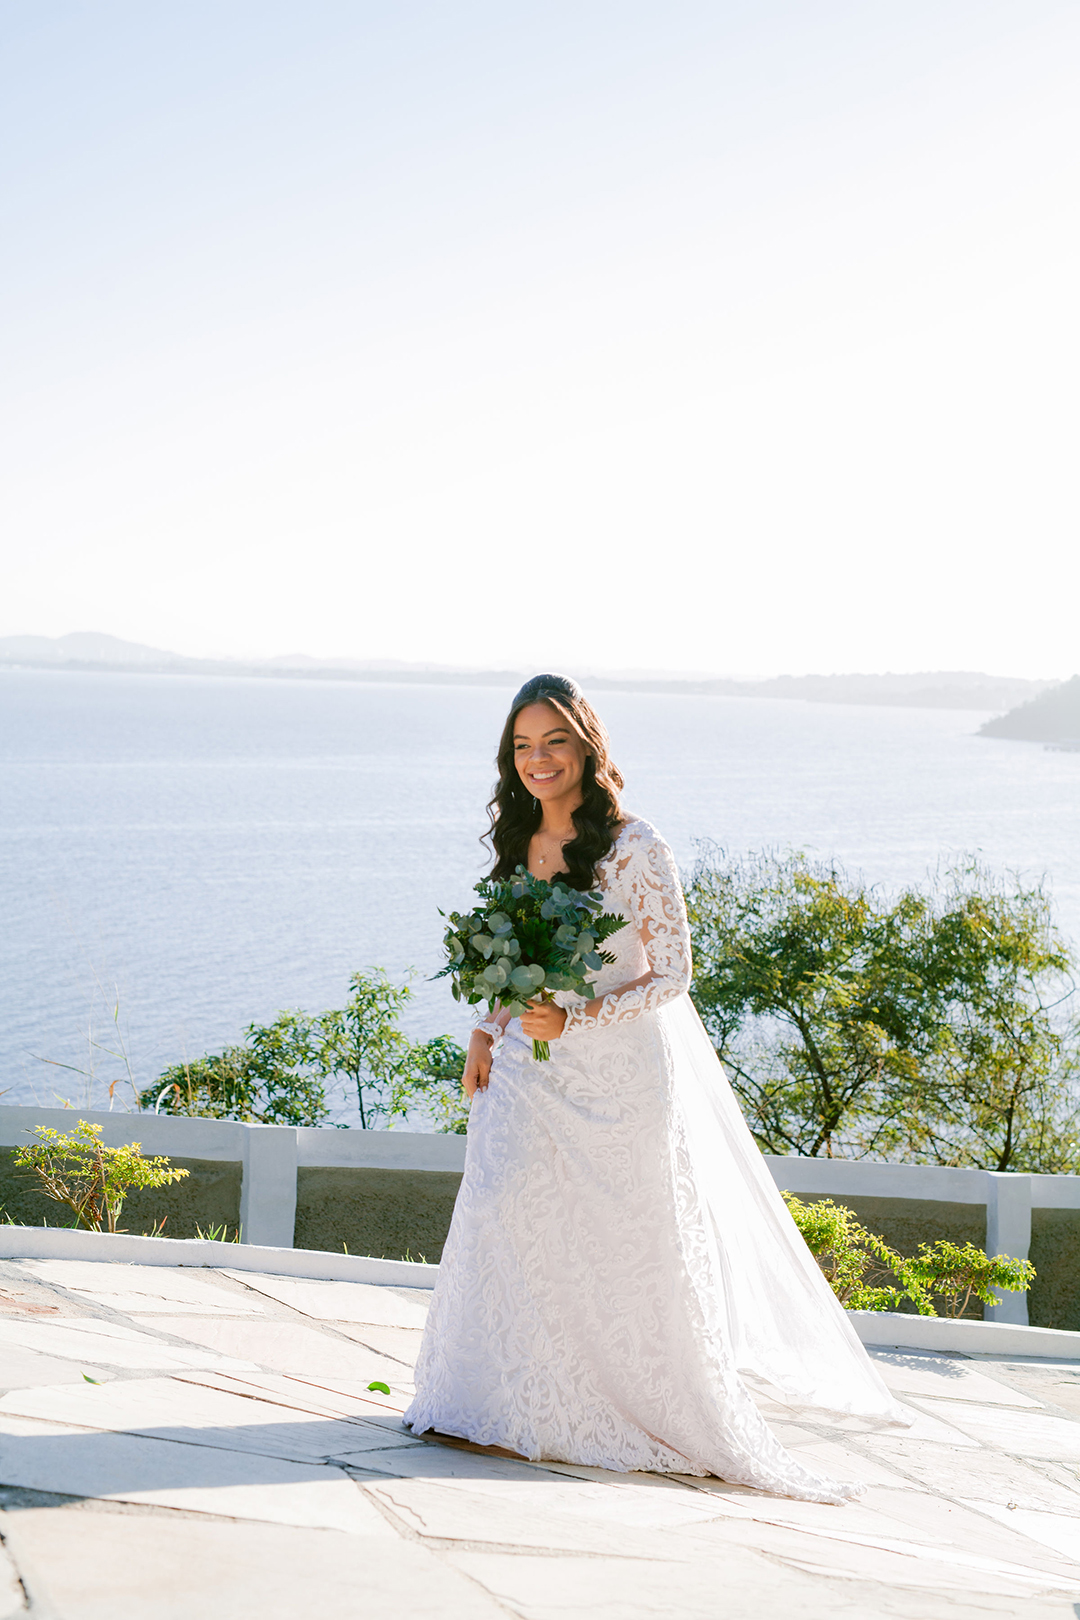 Casamento com projetinhos DIY cheio de personalidade e detalhes adoráveis no Rio de Janeiro &#8211; Karina &#038; Matheus